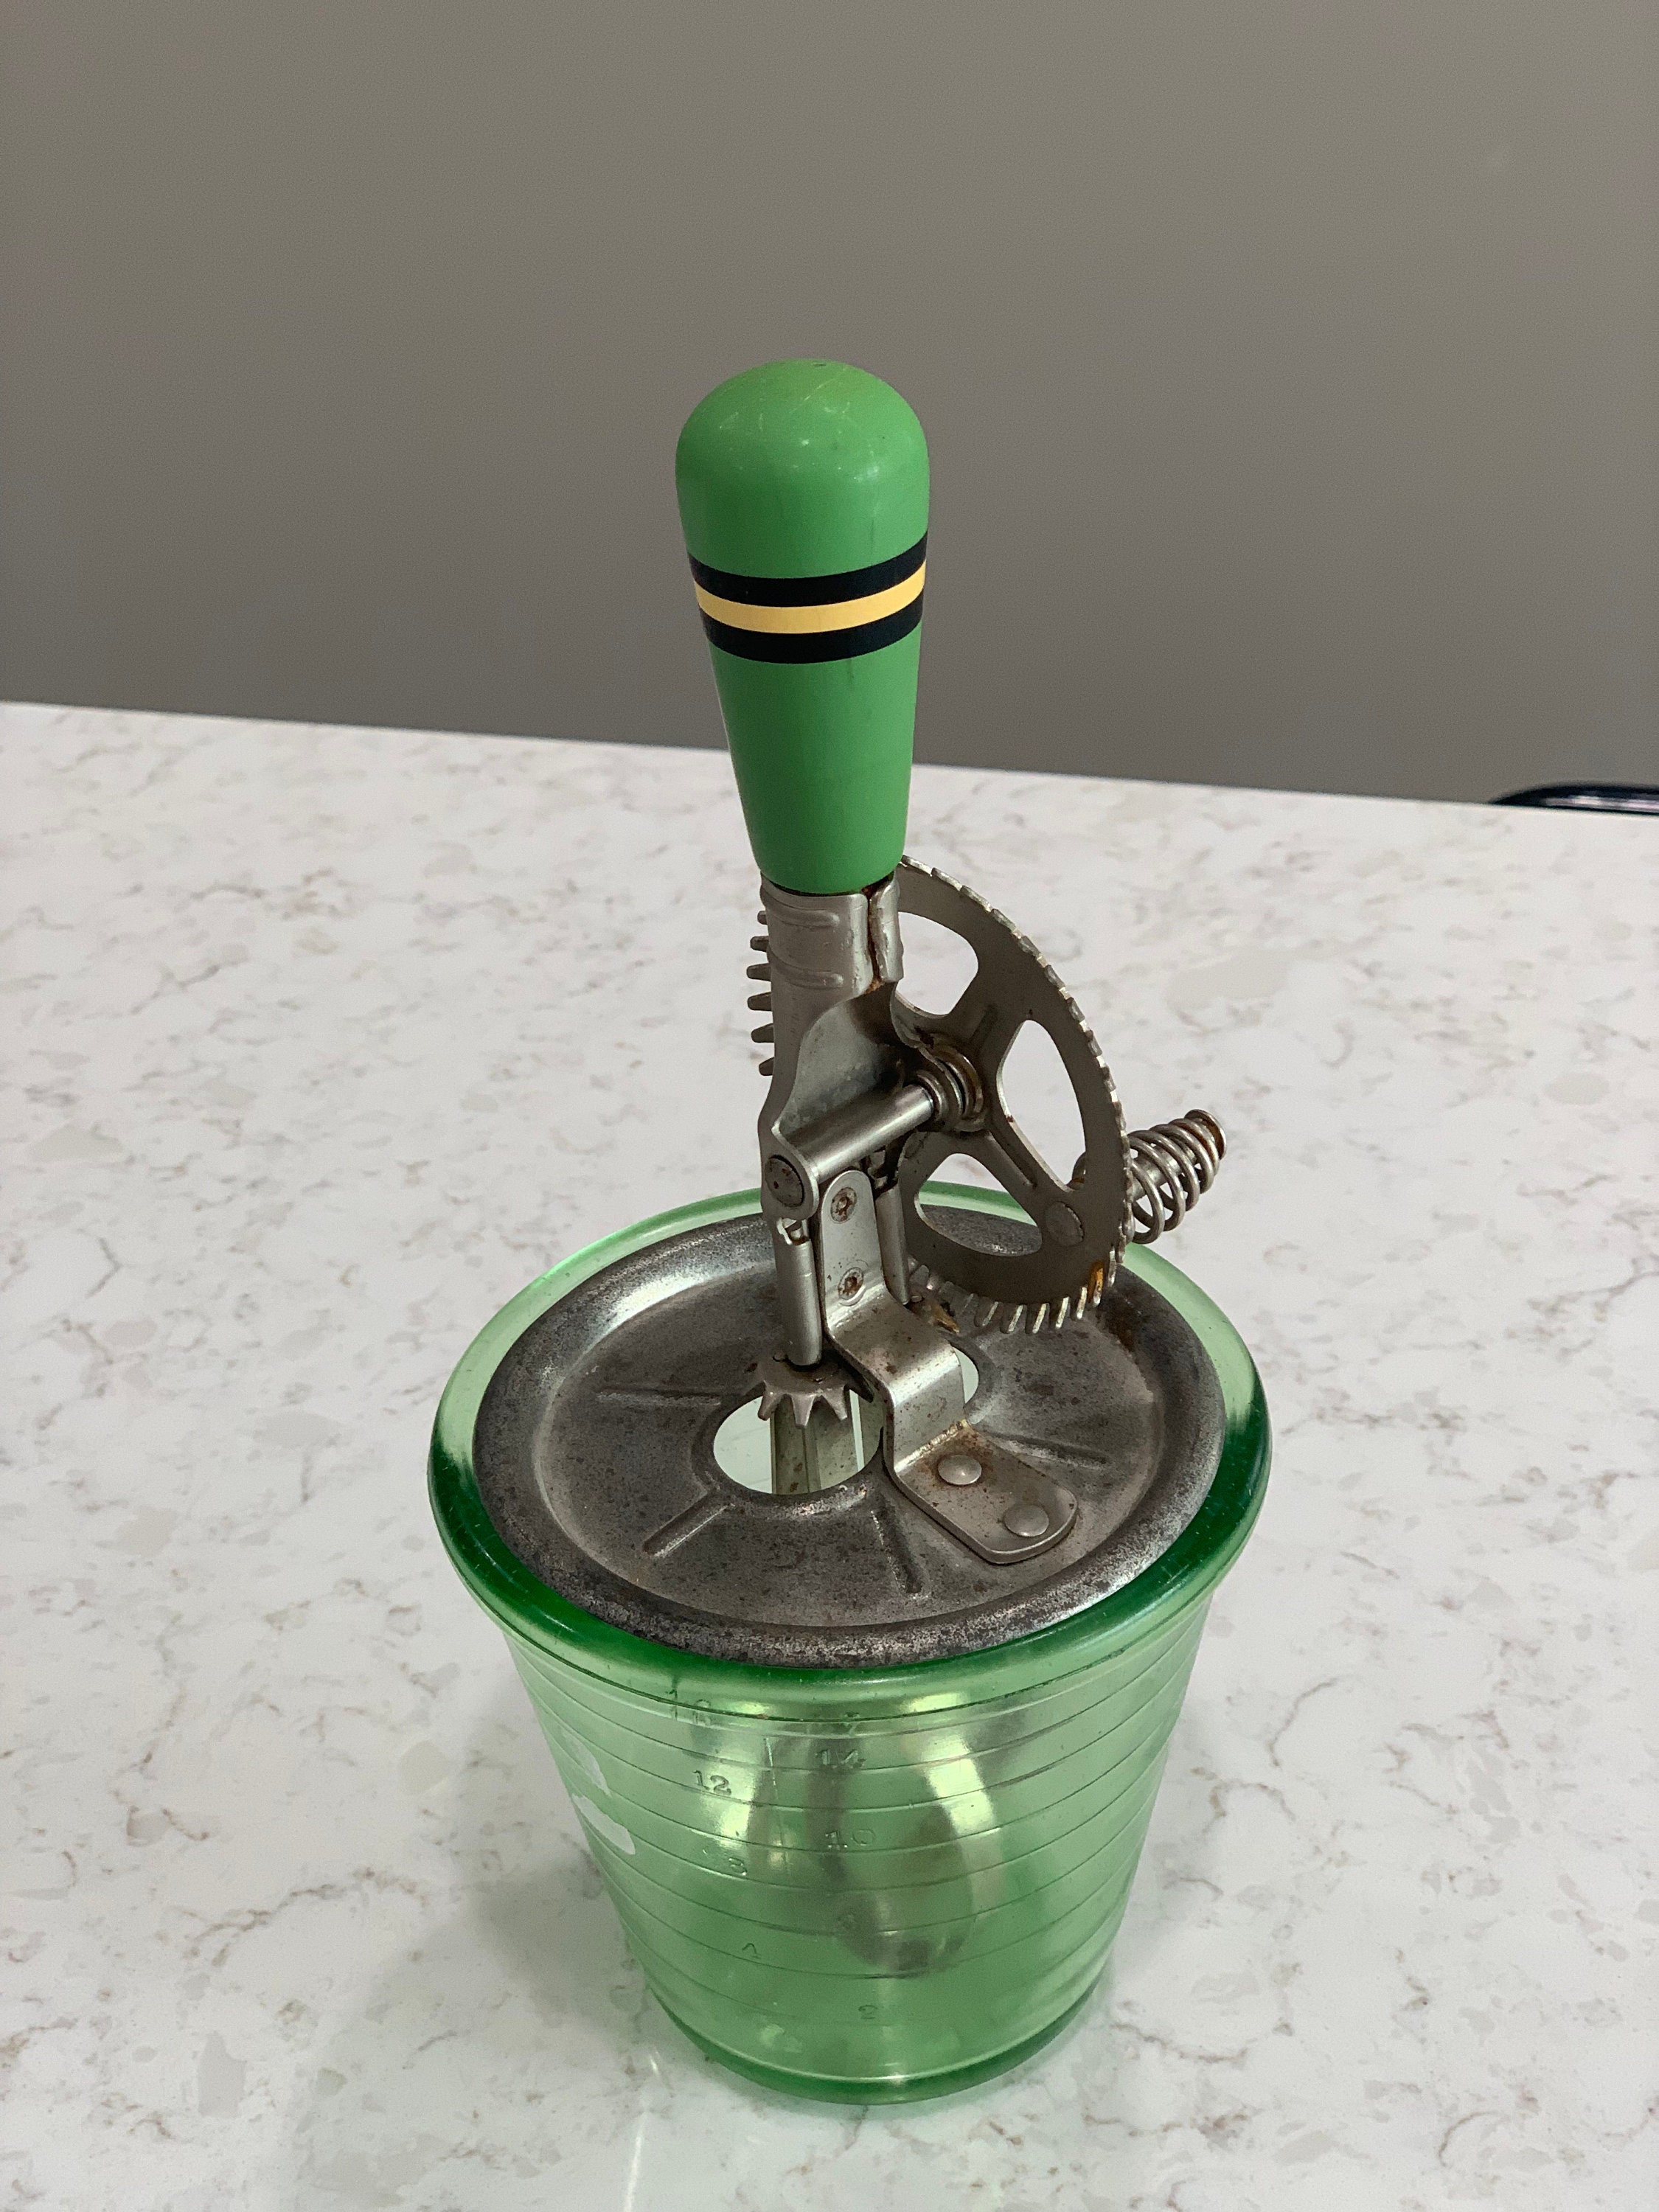 L.E. Smith Depression Glass Green Hand Mixer 